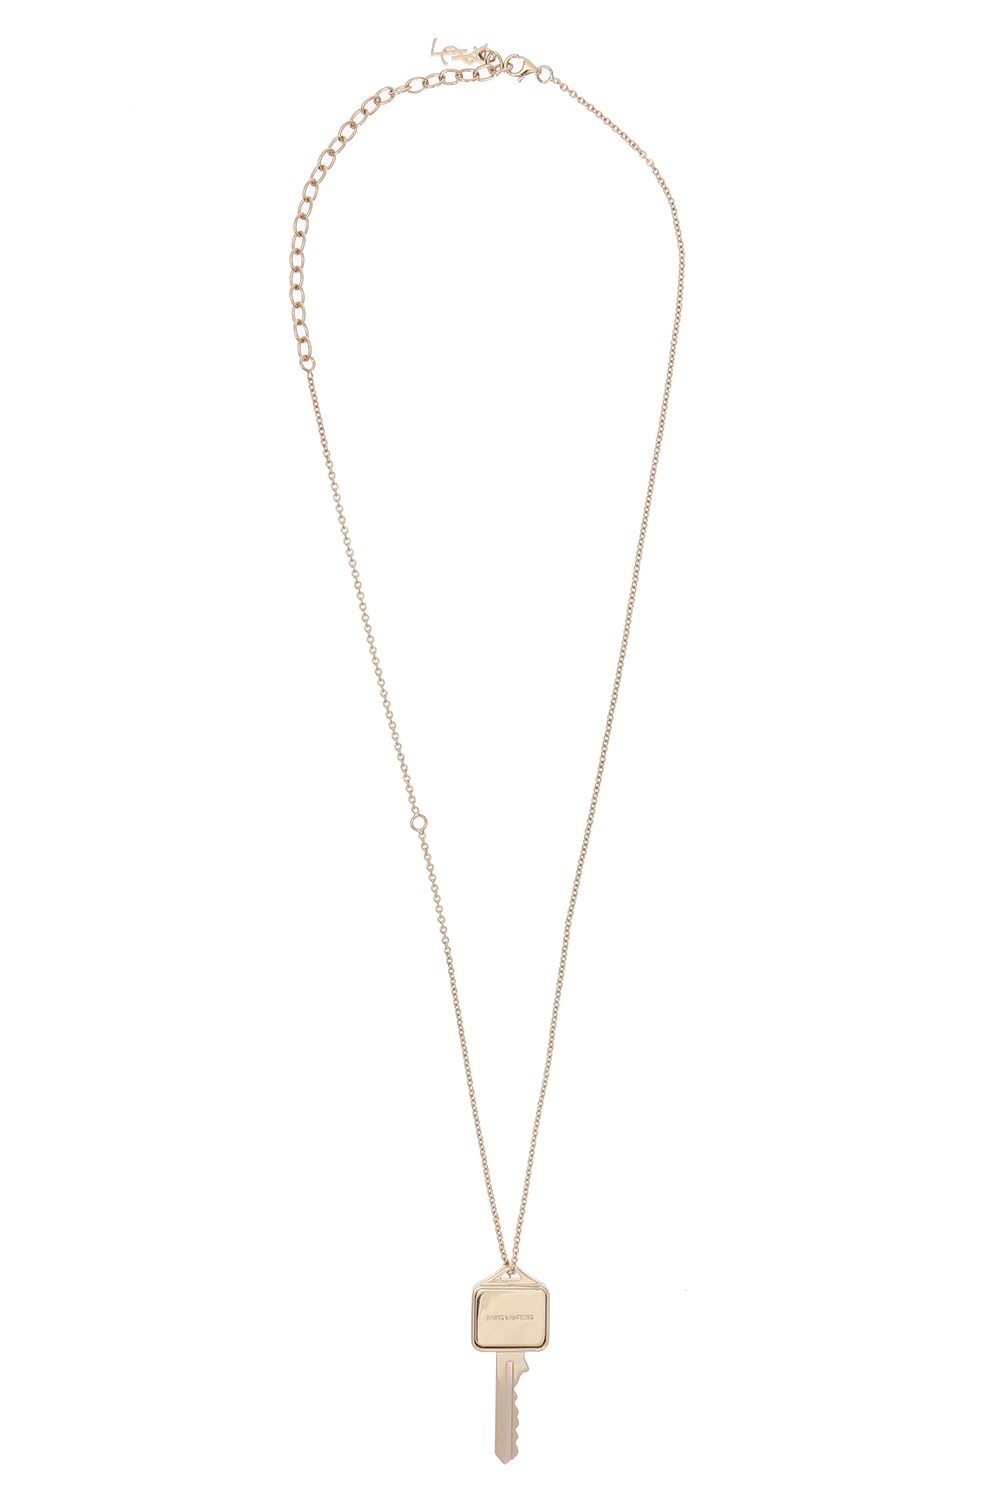 Yves Saint Laurent Key Pendant Necklace